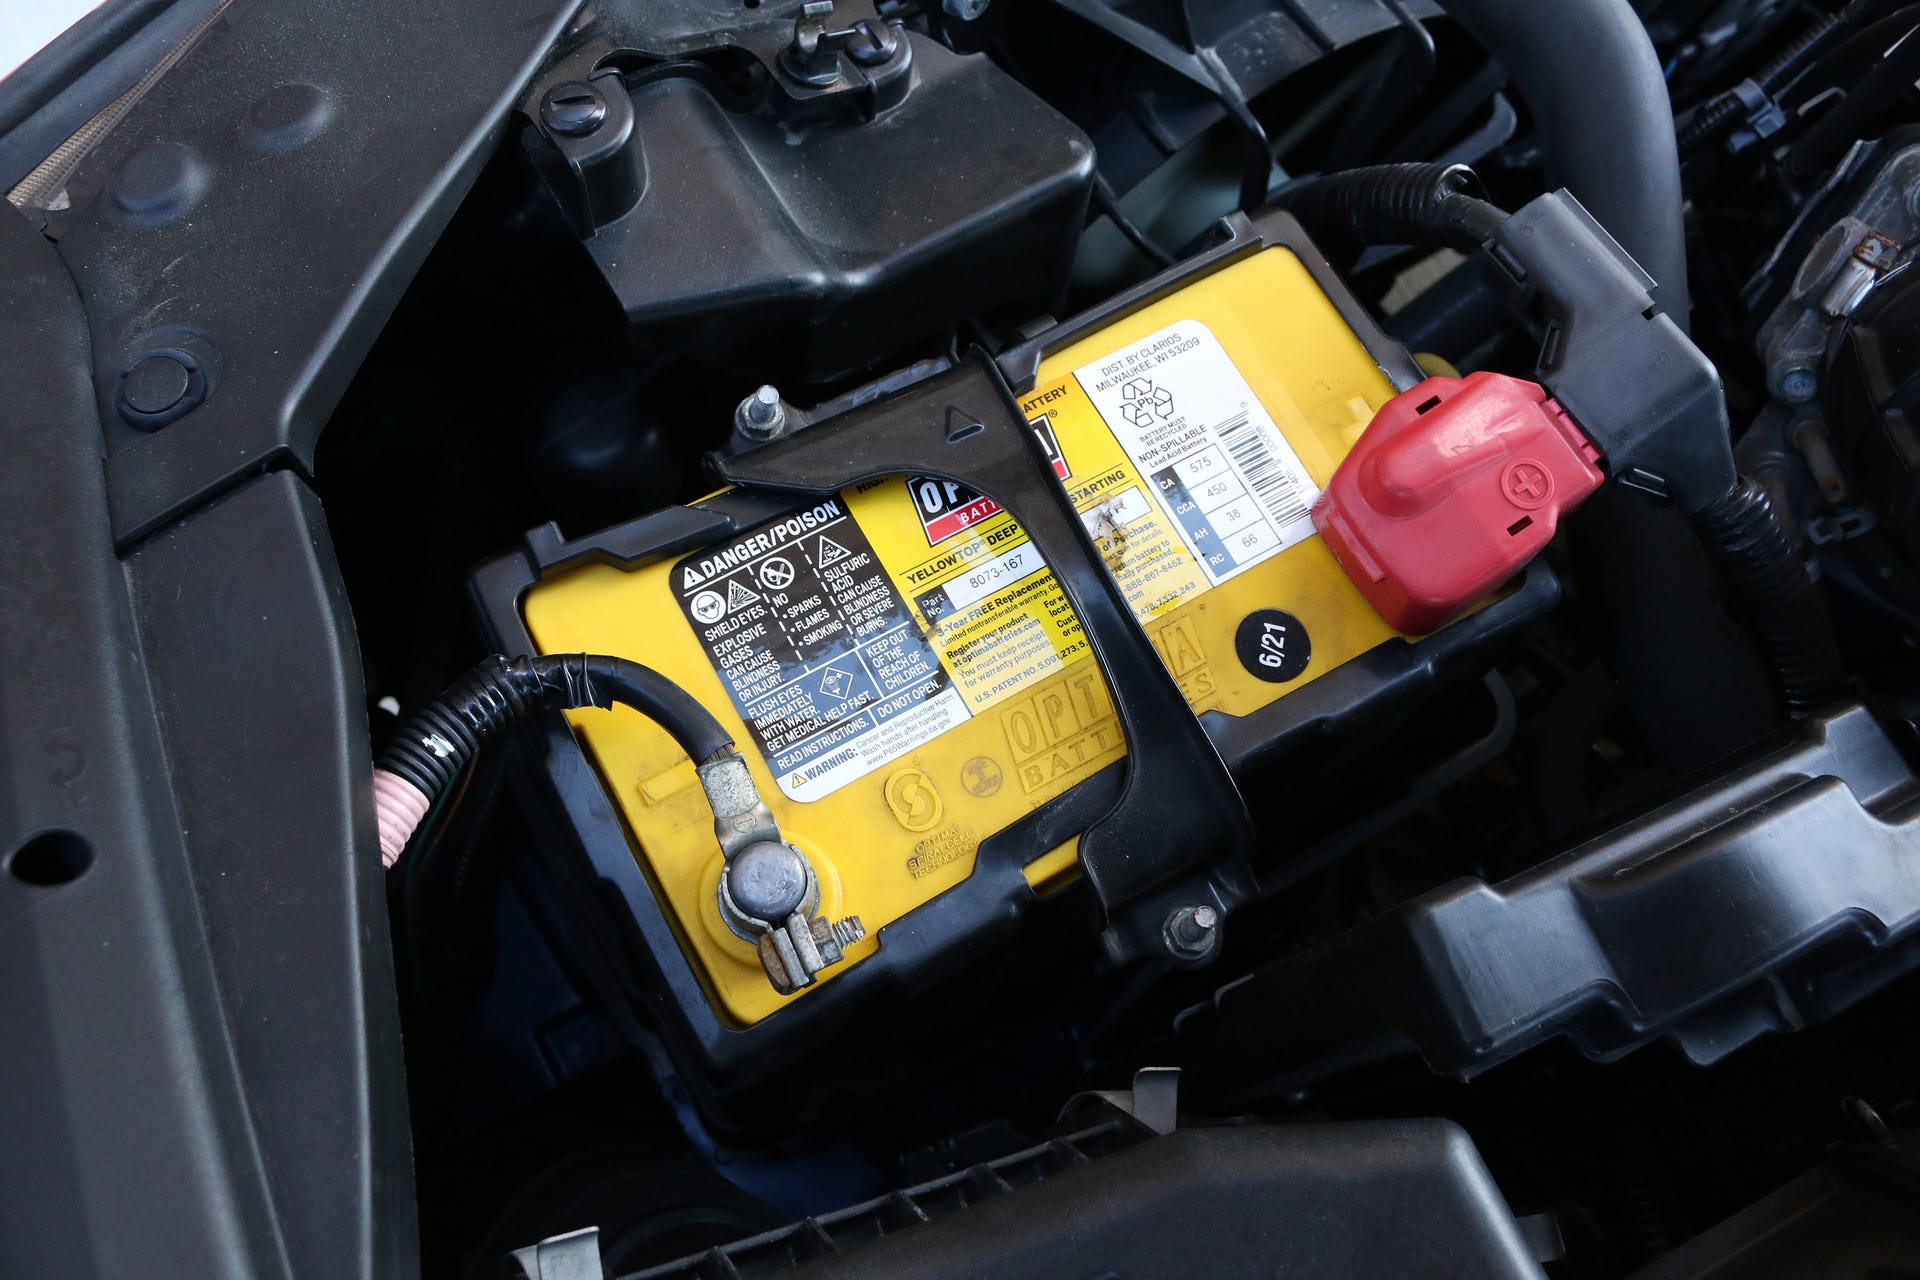 Exide: Exide launches new automotive battery range - The Economic Times